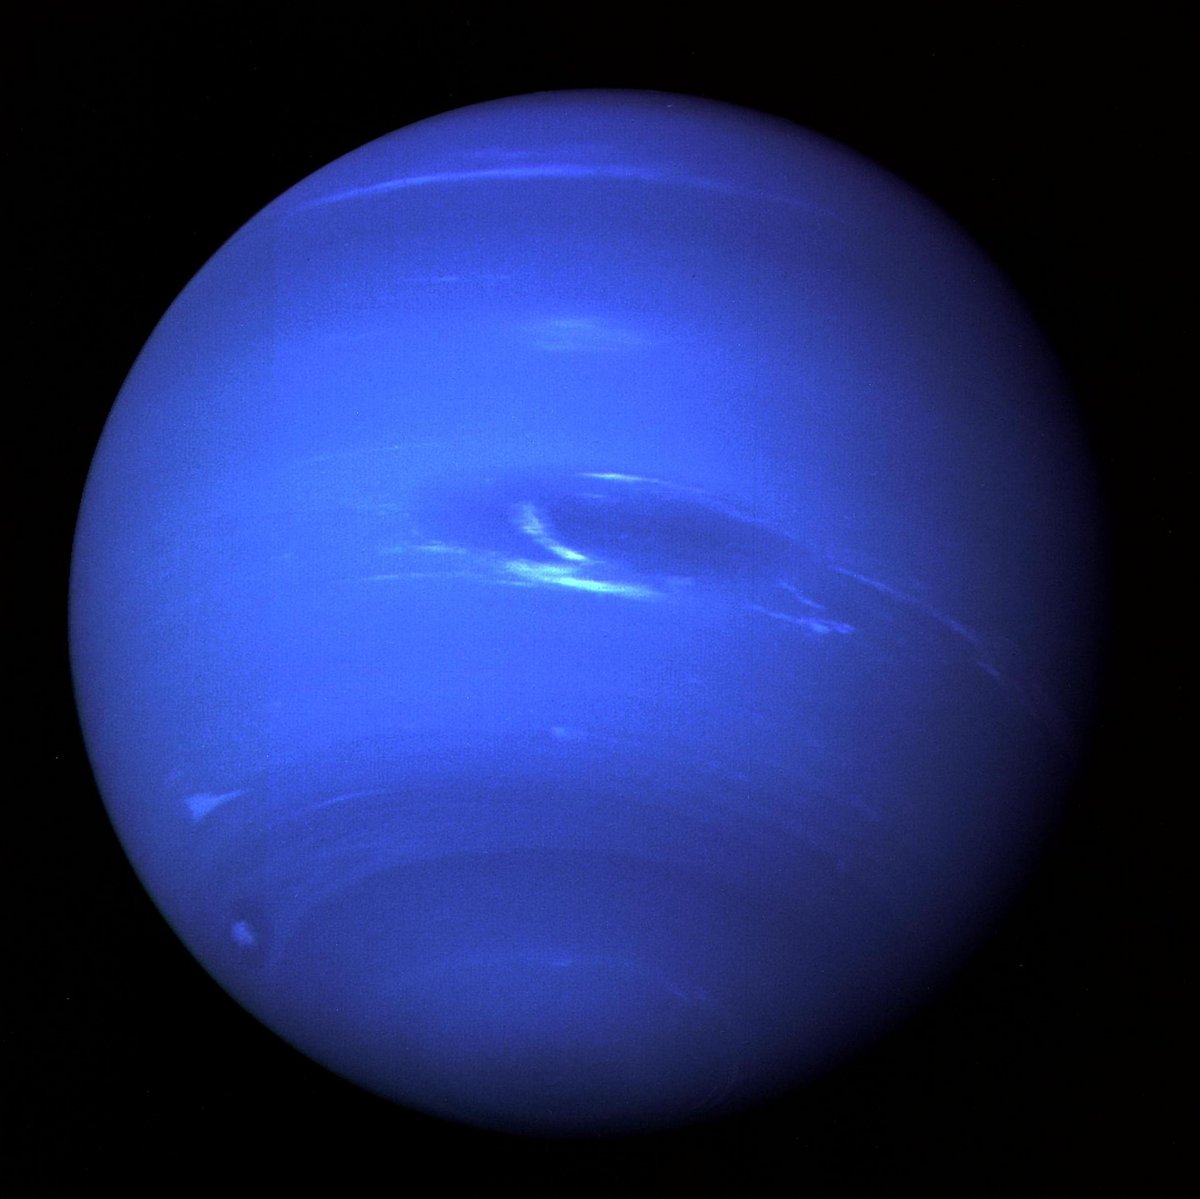 Les sondes Voyager (ici Voyager 2) ont été les seules à survoler les planètes majeures que sont Uranus et Neptune. © NASA 